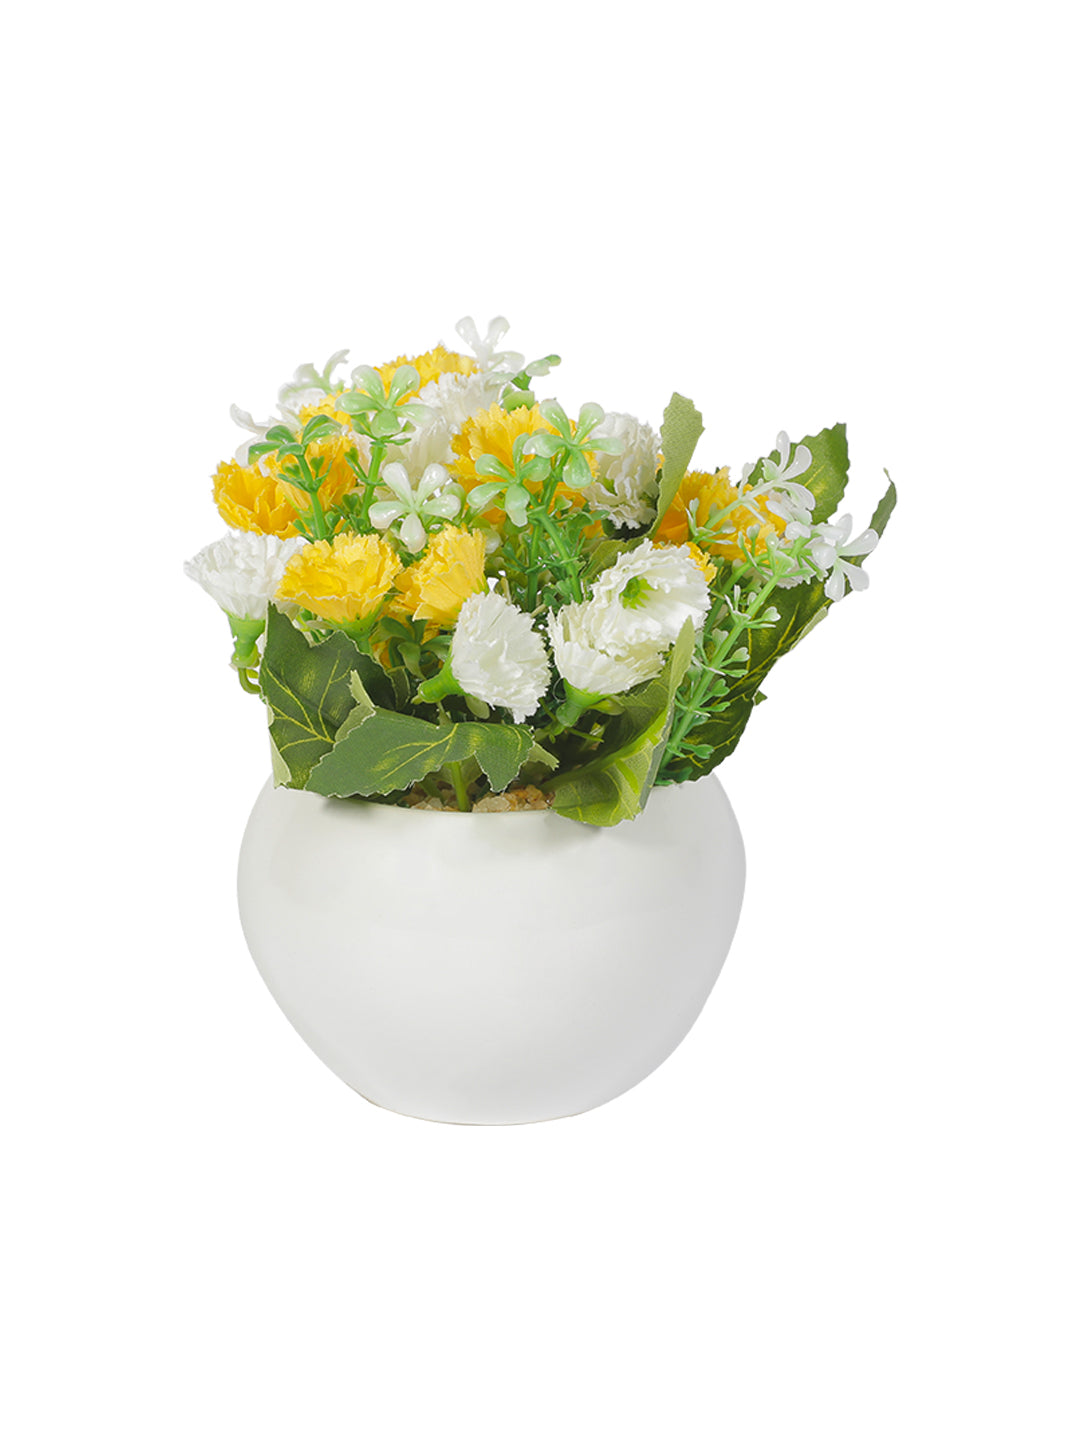 VON CASA Round Plastic Yellow Flower With Pot